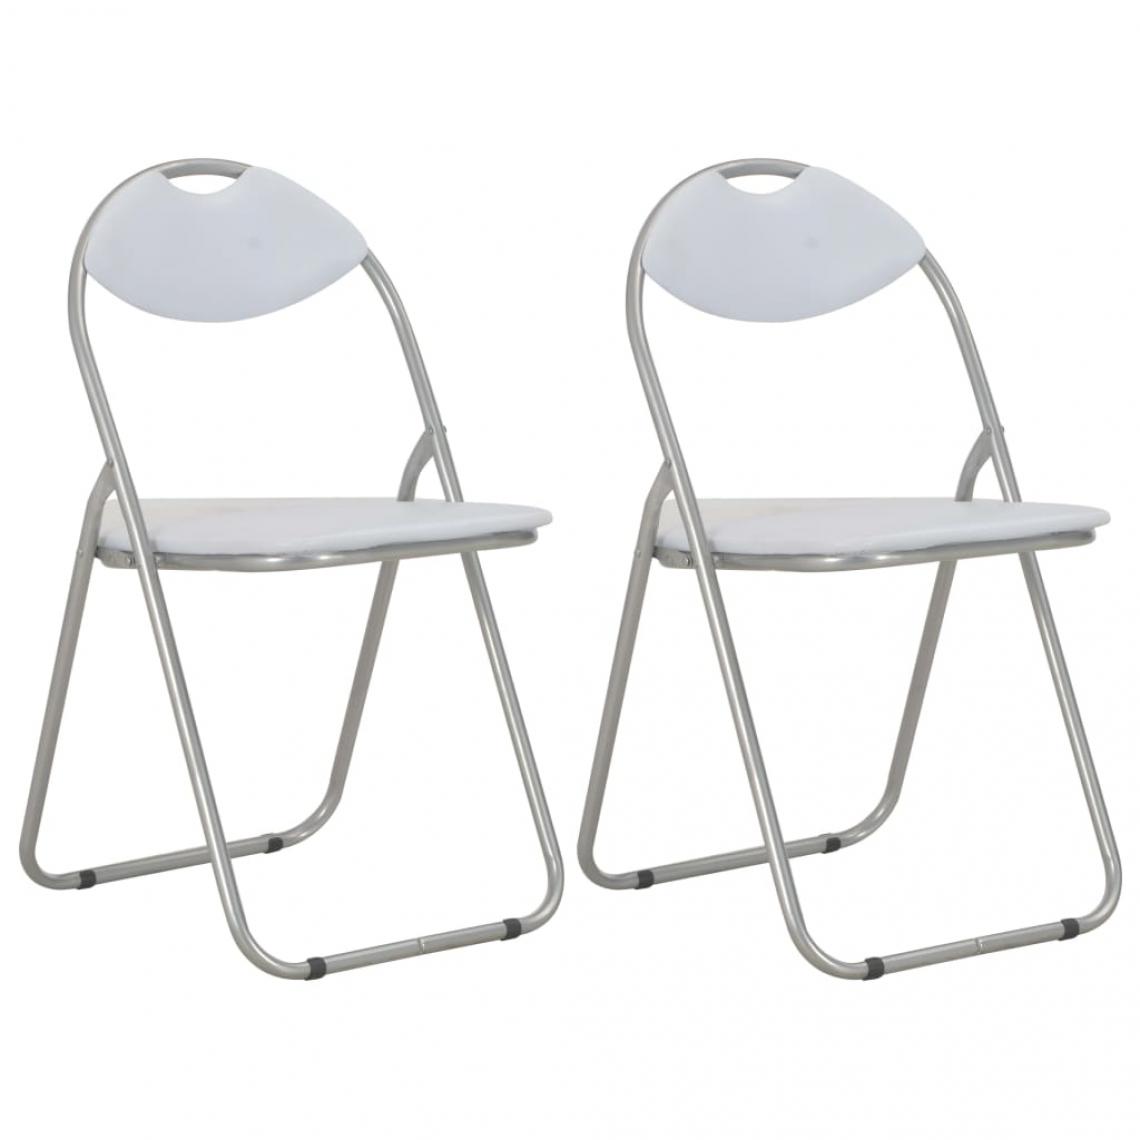 Decoshop26 - Lot de 2 chaises de salle à manger cuisine pliantes design rétro similicuir blanc CDS020948 - Chaises